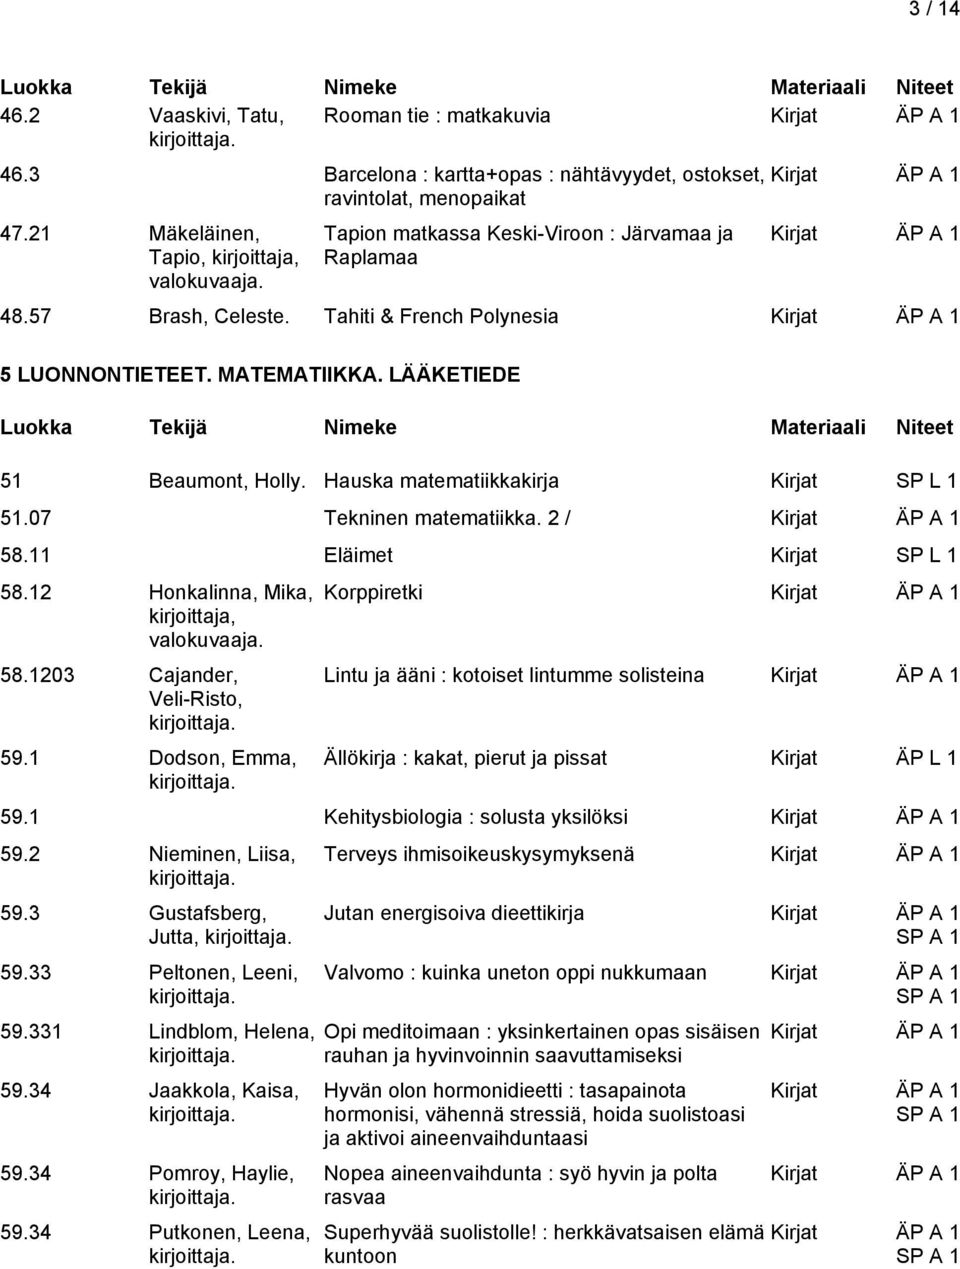 07 Tekninen matematiikka. 2 / 58.11 Eläimet Kirjat 58.12 Honkalinna, Mika, kirjoittaja, valokuvaaja. 58.1203 Cajander, Veli-Risto, 59.